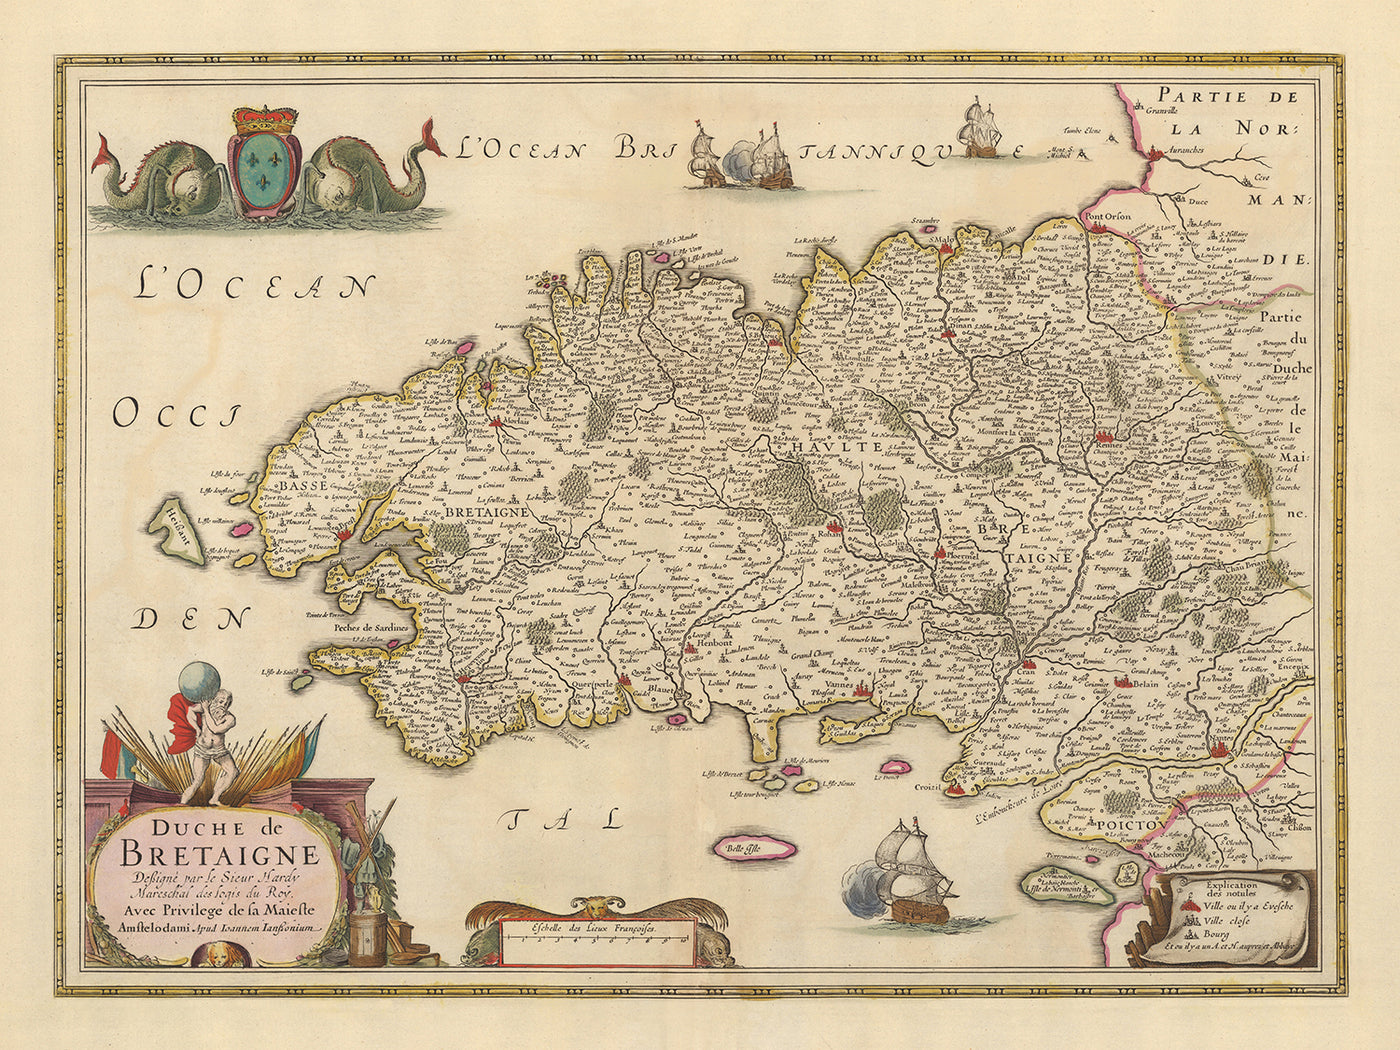 Alte Karte der Bretagne von Nicolaes Visscher, 1690: Rennes, Nantes, Brest, Saint-Malo und Vannes